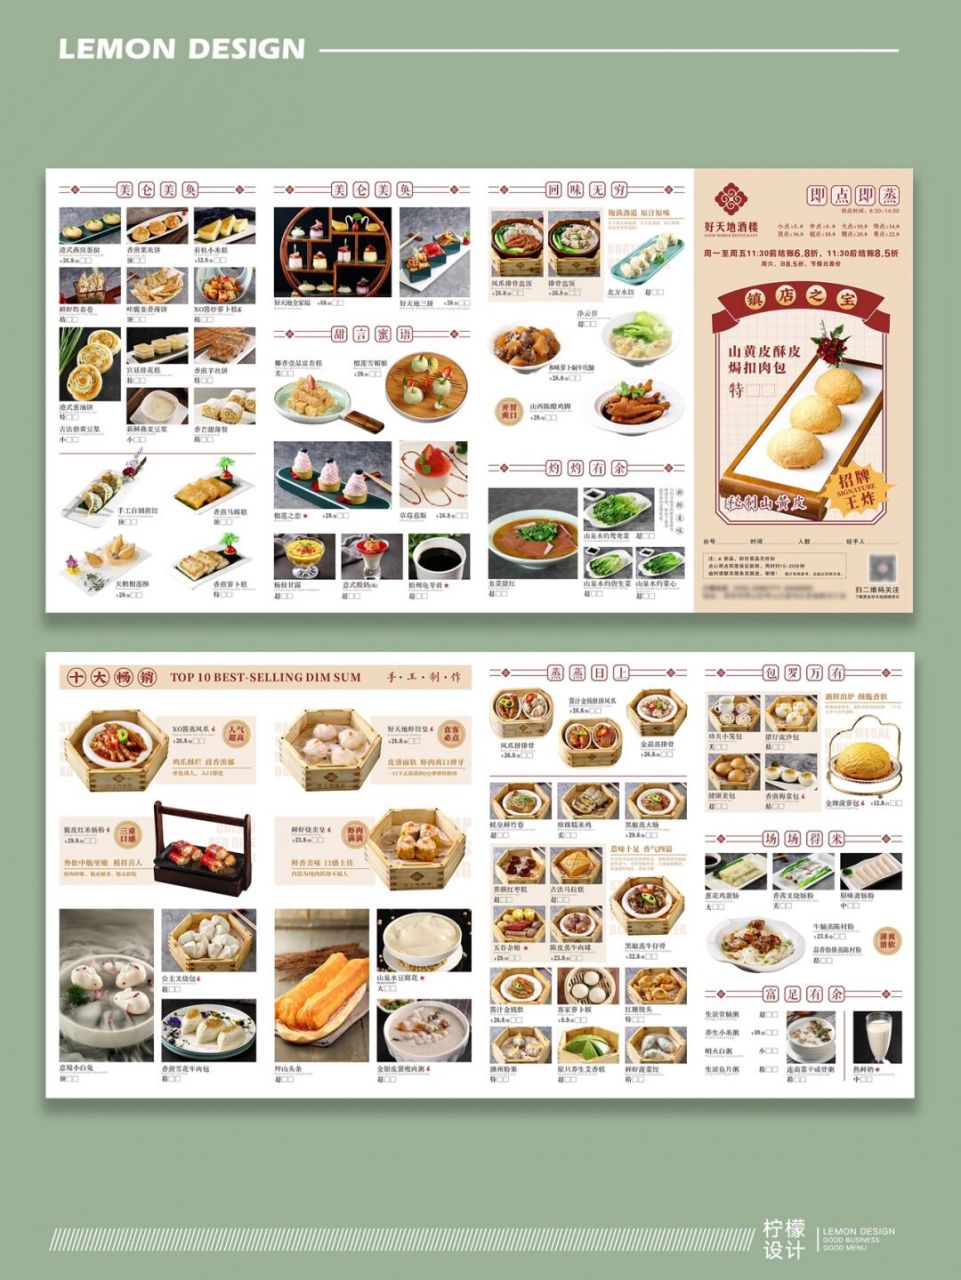 粤菜新年菜单意头菜图片